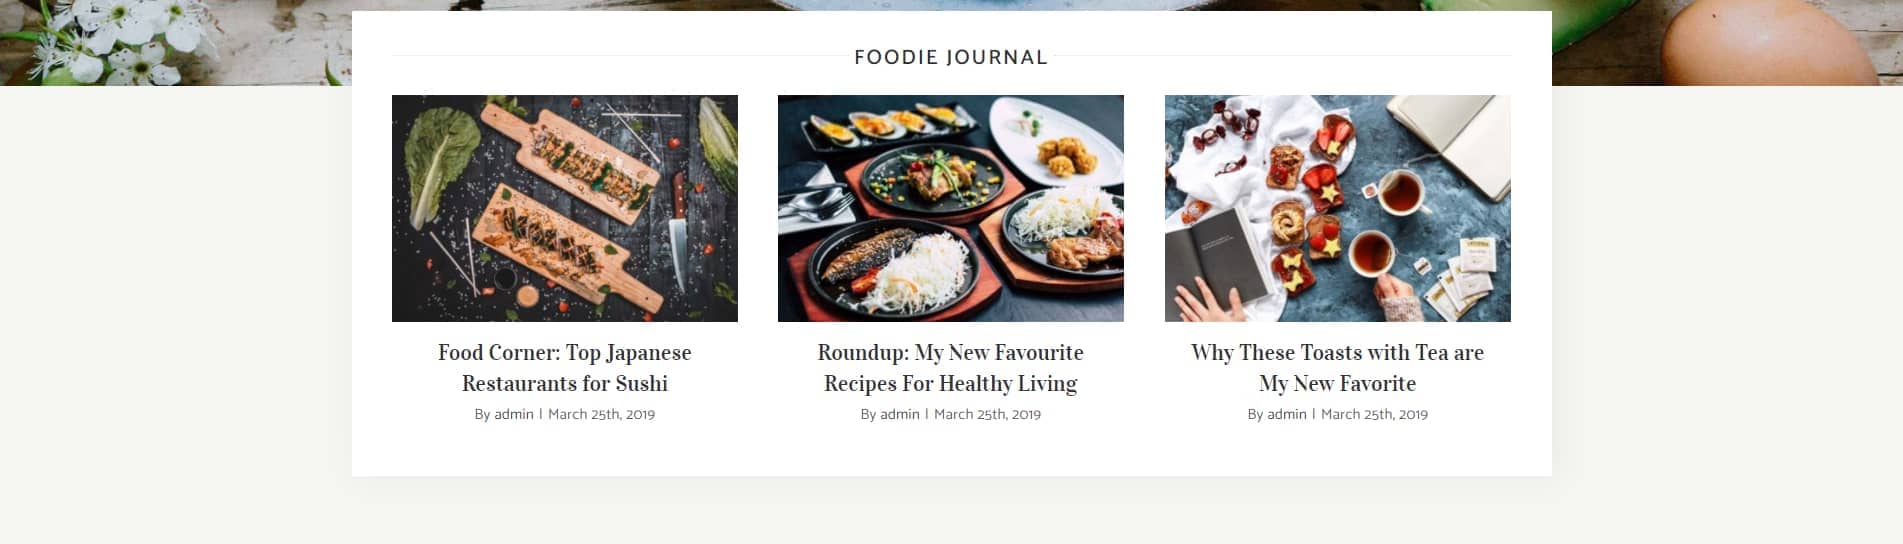 Avada Food Foodie Journal